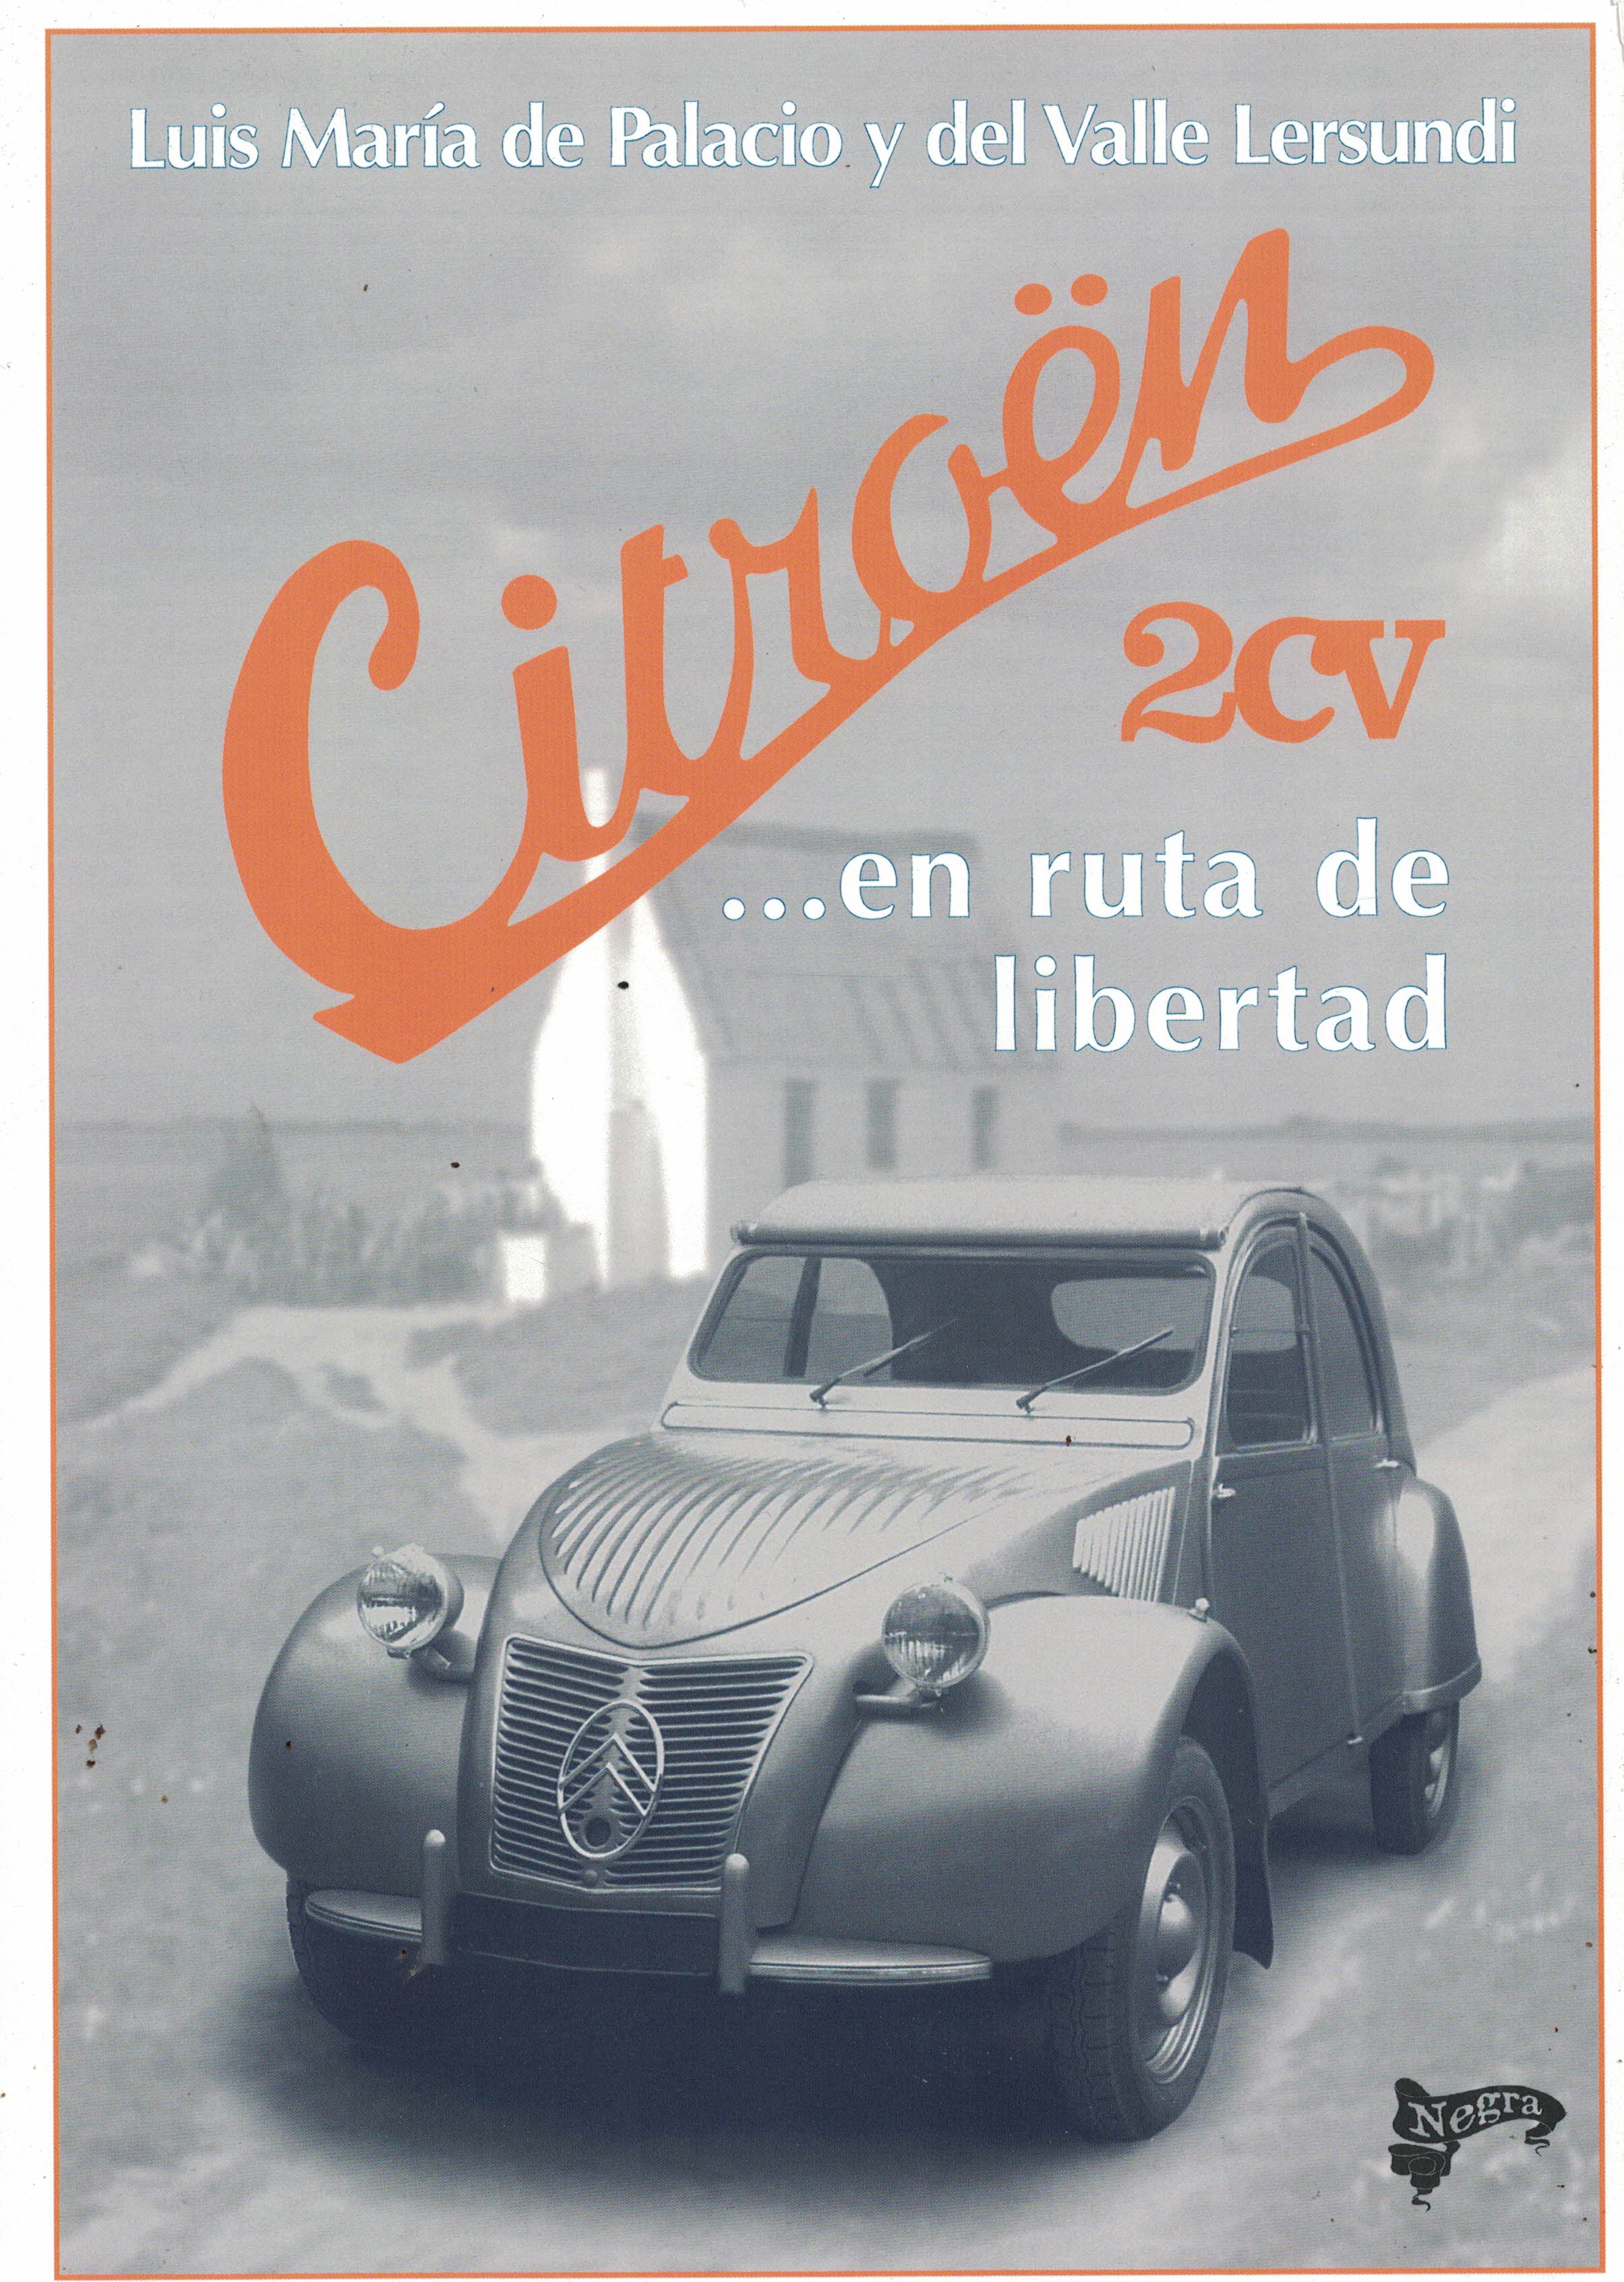 Citroën 2CV... En ruta de libertad